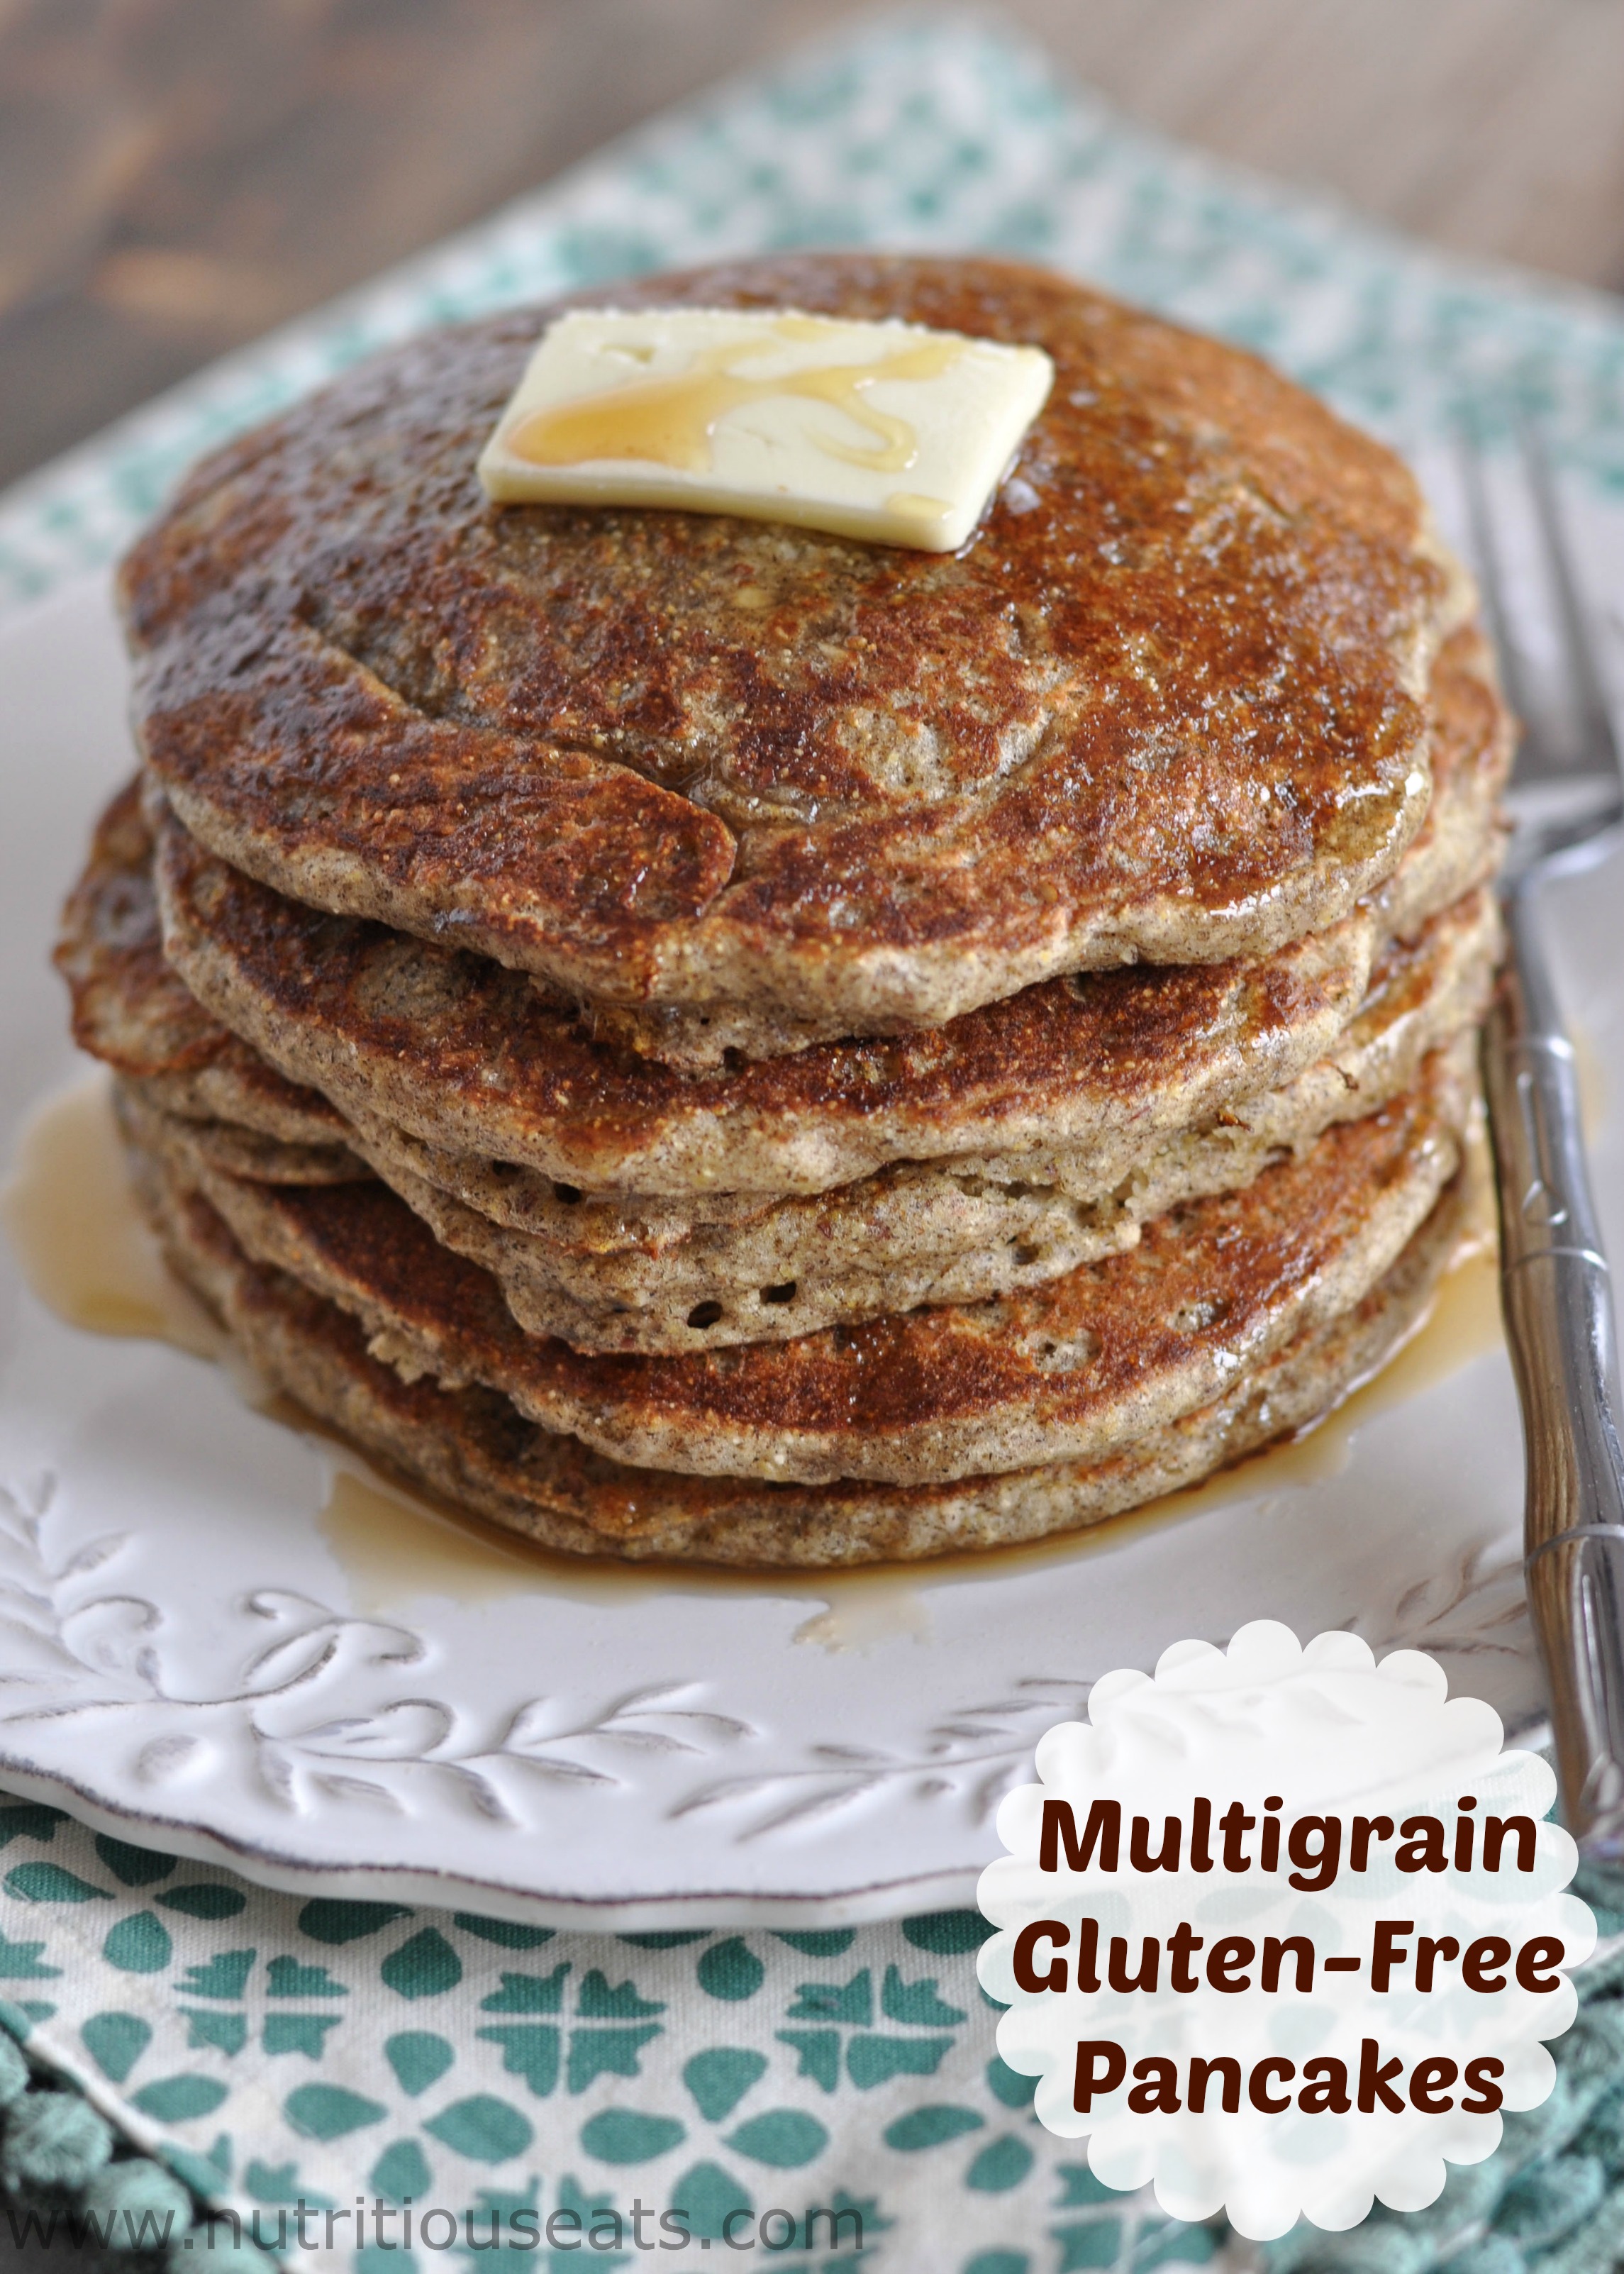 Multigrain Gluten-Free Pancakes | www.nutritiouseats.com